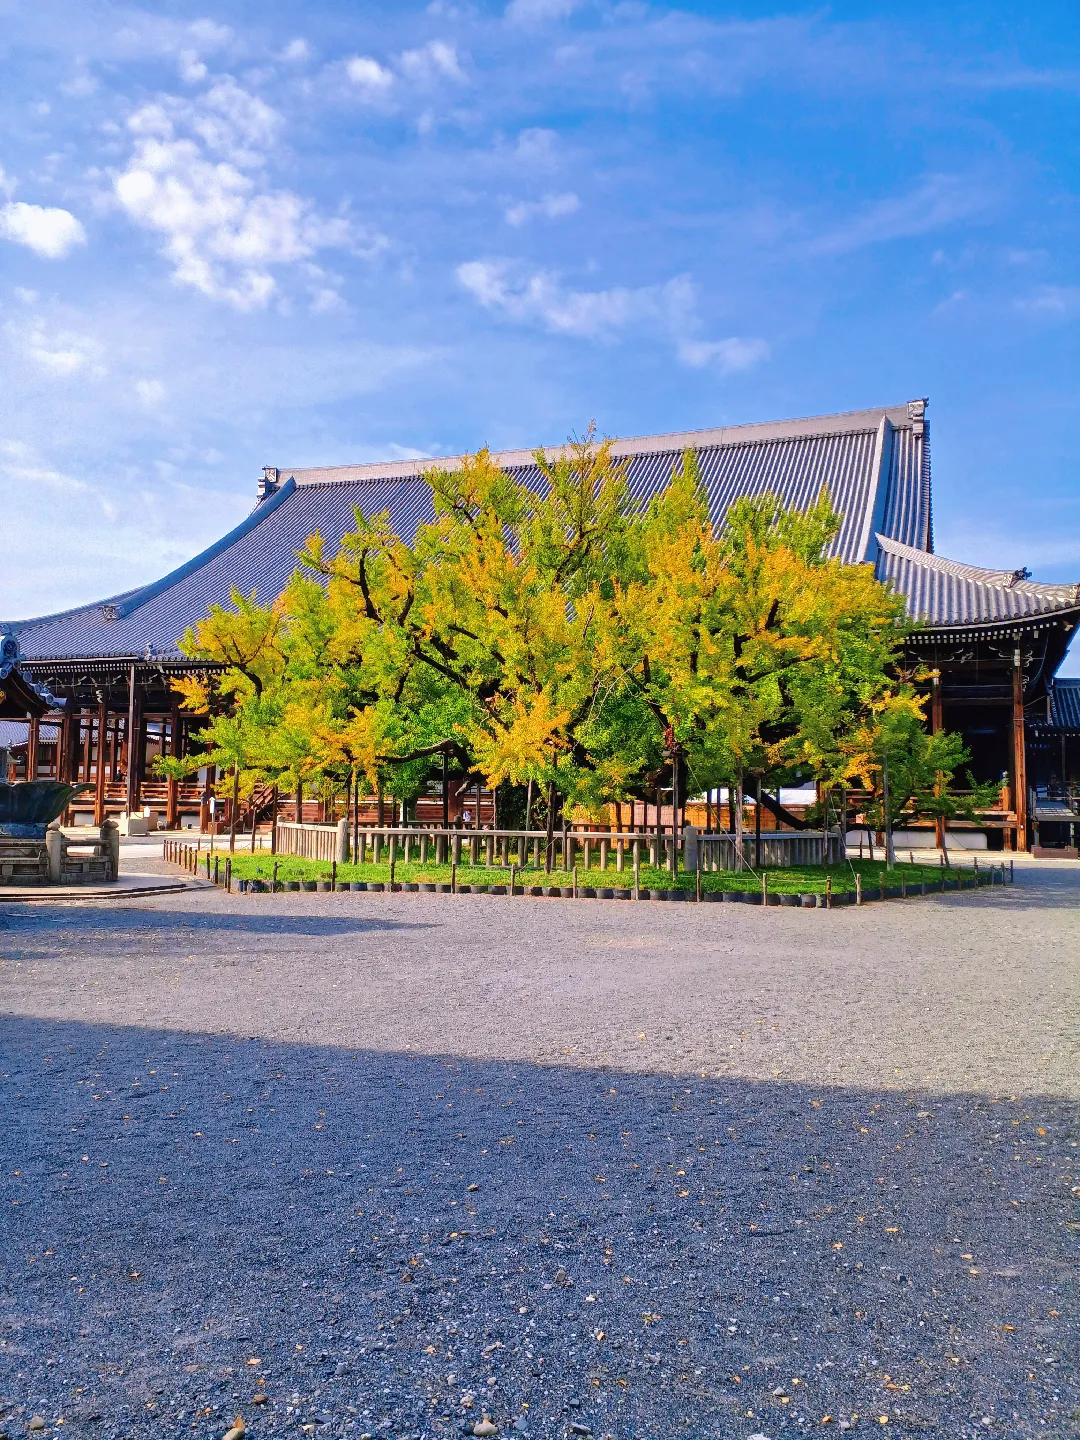 【京都ぶらり】秋晴れの京都から 西本願寺の大銀杏の画像 (3枚目)